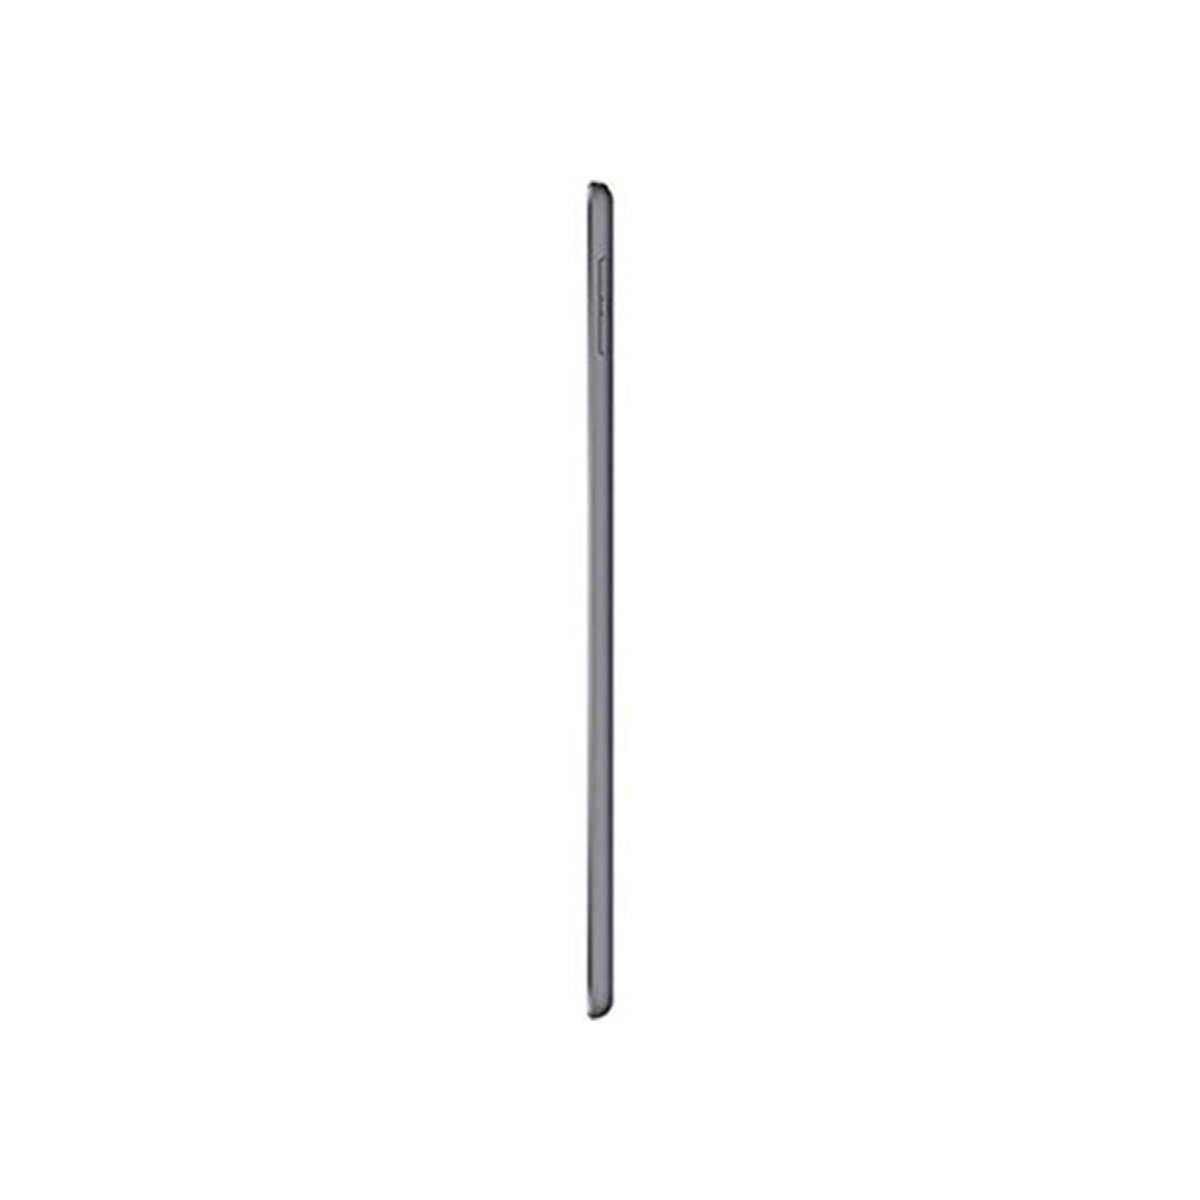 Apple iPad Mini (Wi-Fi, 256GB) Space Gray